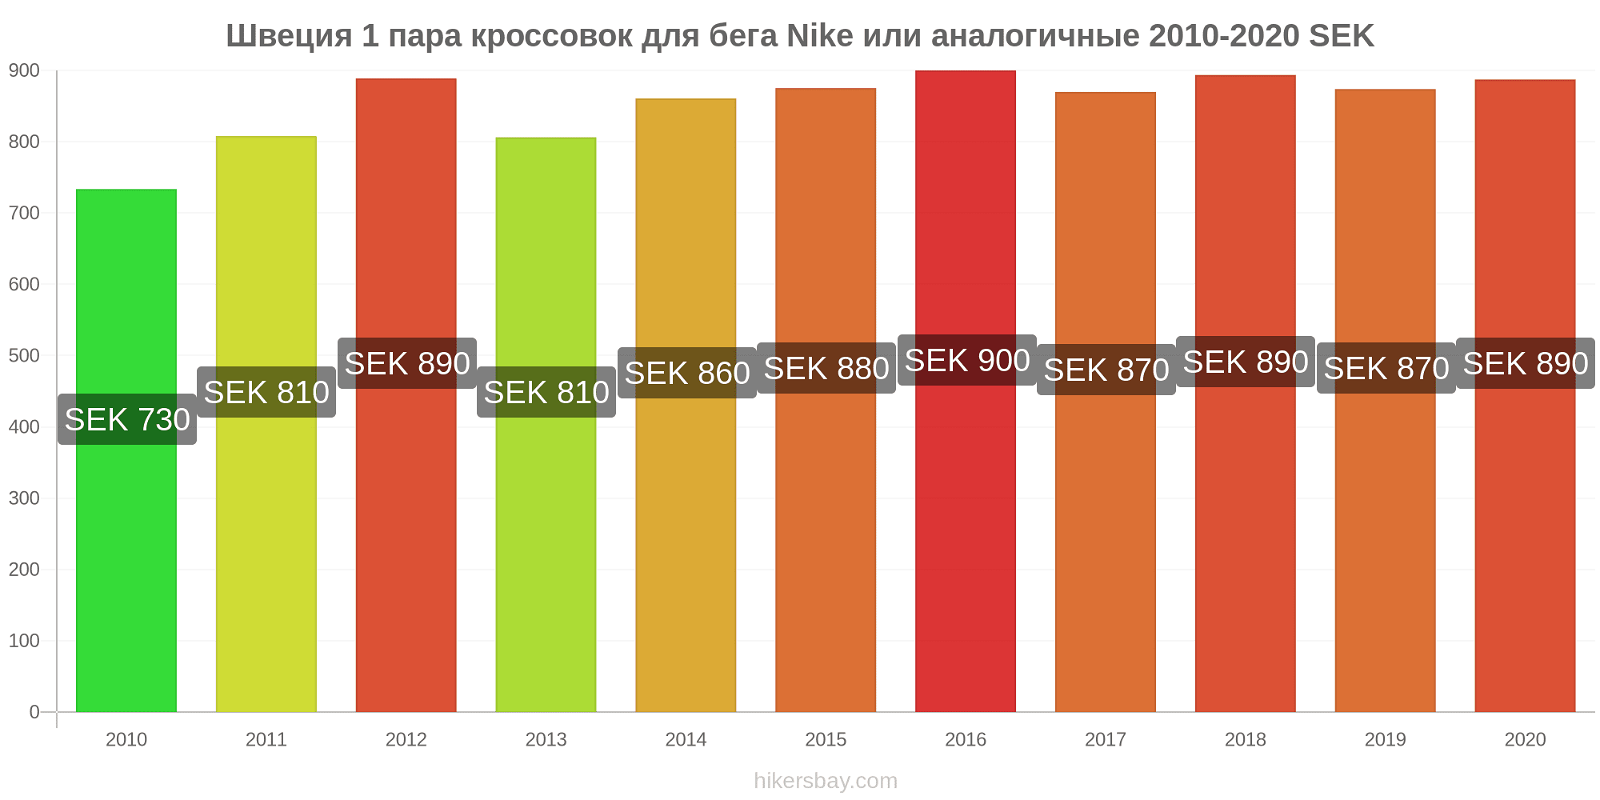 Швеция изменения цен 1 пара кроссовок для бега Nike или аналогичные hikersbay.com